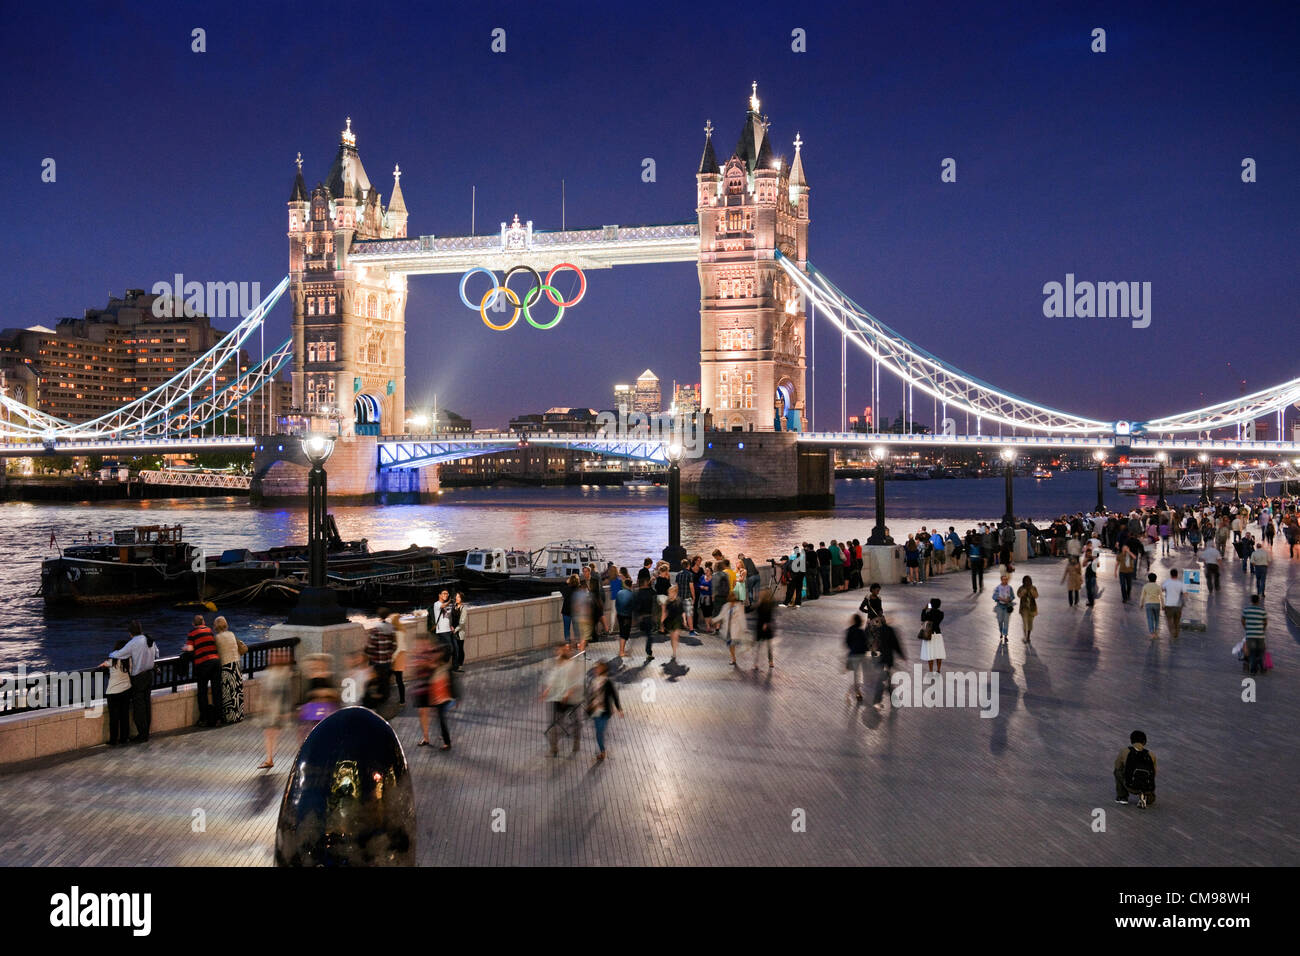 London, UK Wednesdayv27th Juni 2012. Im Anschluss an die Enthüllung der Olympischen Ringe auf Tower Bridge früher in den Tag Massen behandelt wurden, eine spektakuläre Vorschau des Licht-Show, die jede Nacht während der Olympischen Spiele spielen. London veranstaltet die 30. Olympischen Sommerspiele, die am 27. Juli 2012 beginnen. Stockfoto